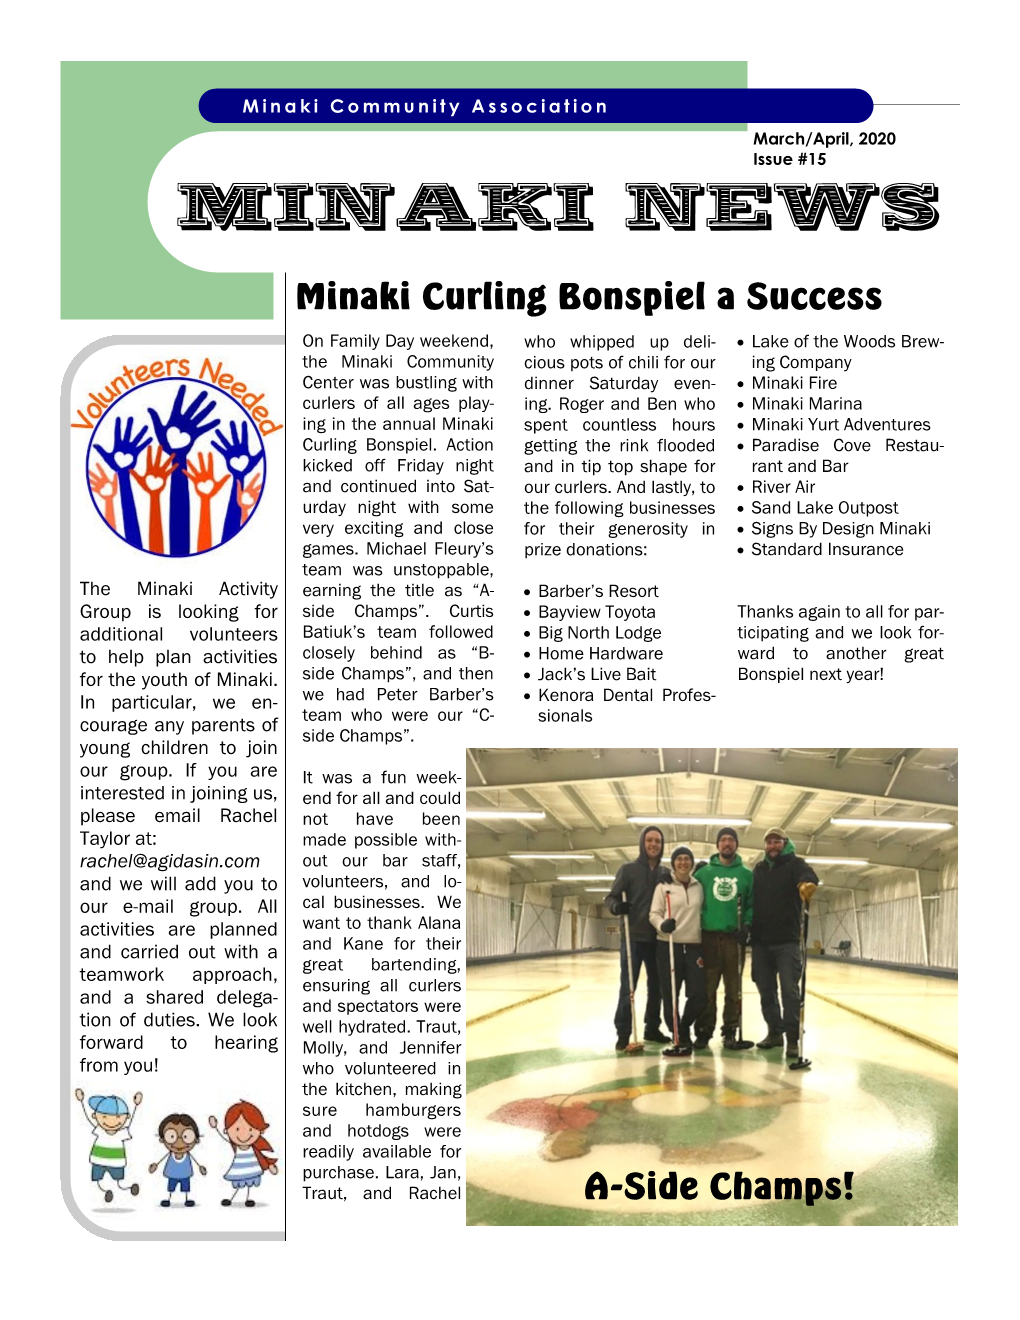 MINAKI NEWS Minaki Curling Bonspiel a Success